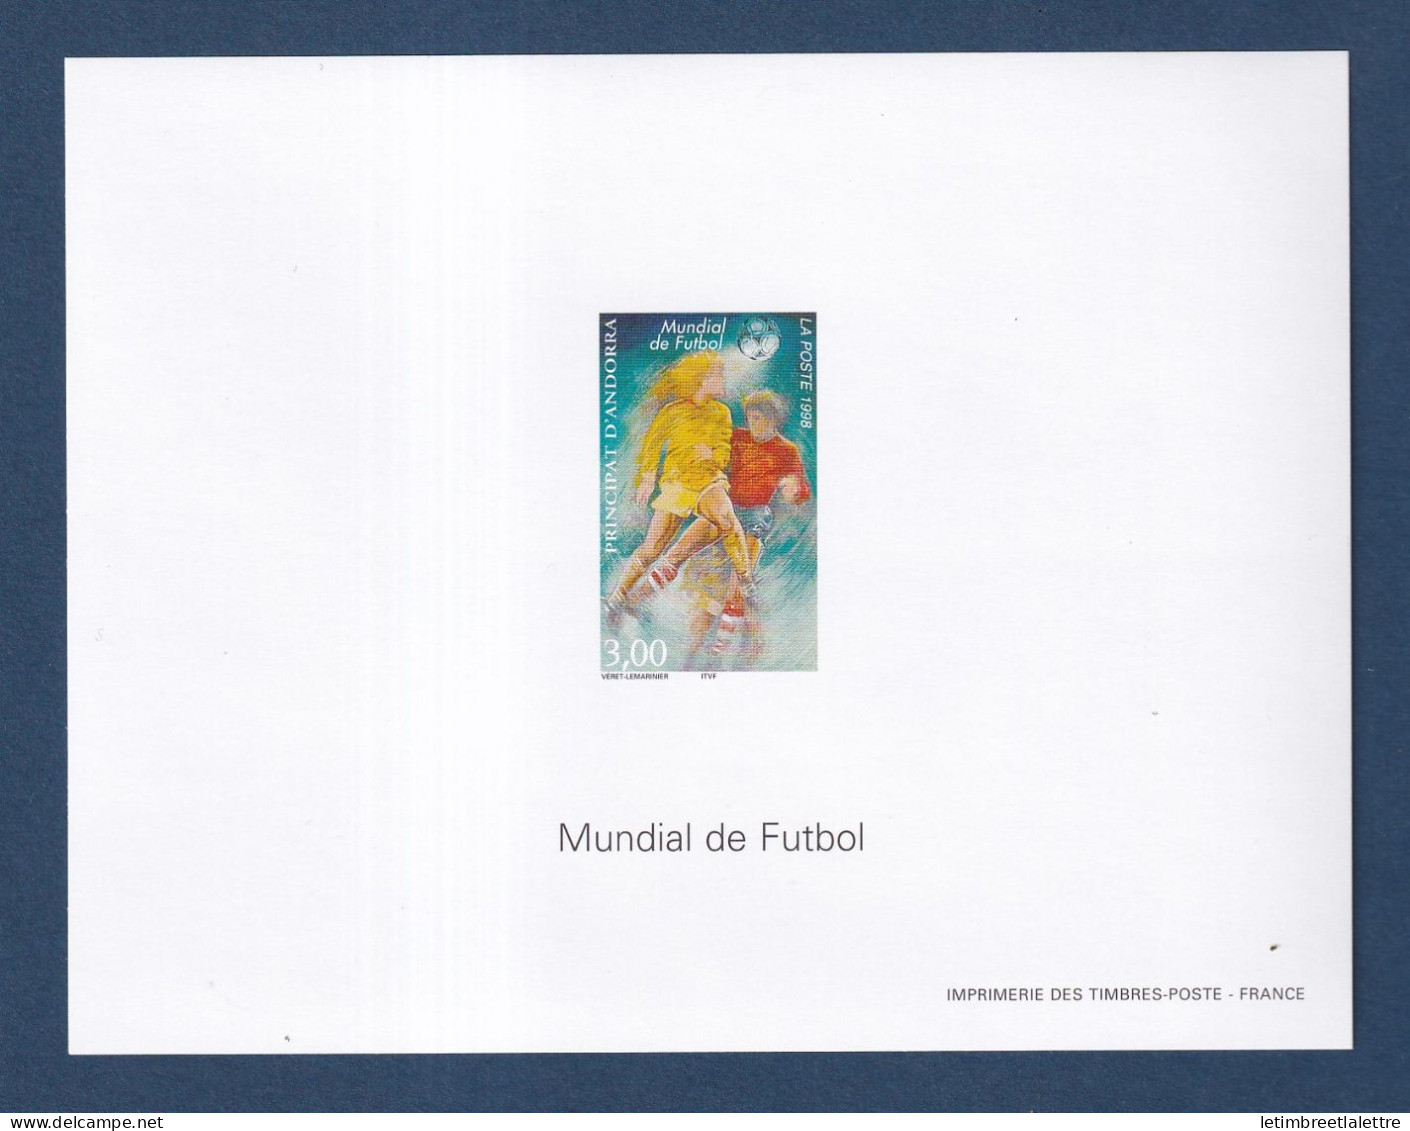 Andorre - Bloc Feuillet Non Dentelé Avec Gomme - YT N° 503 ** - Neuf Sans Charnière - ND - 1998 - Unused Stamps